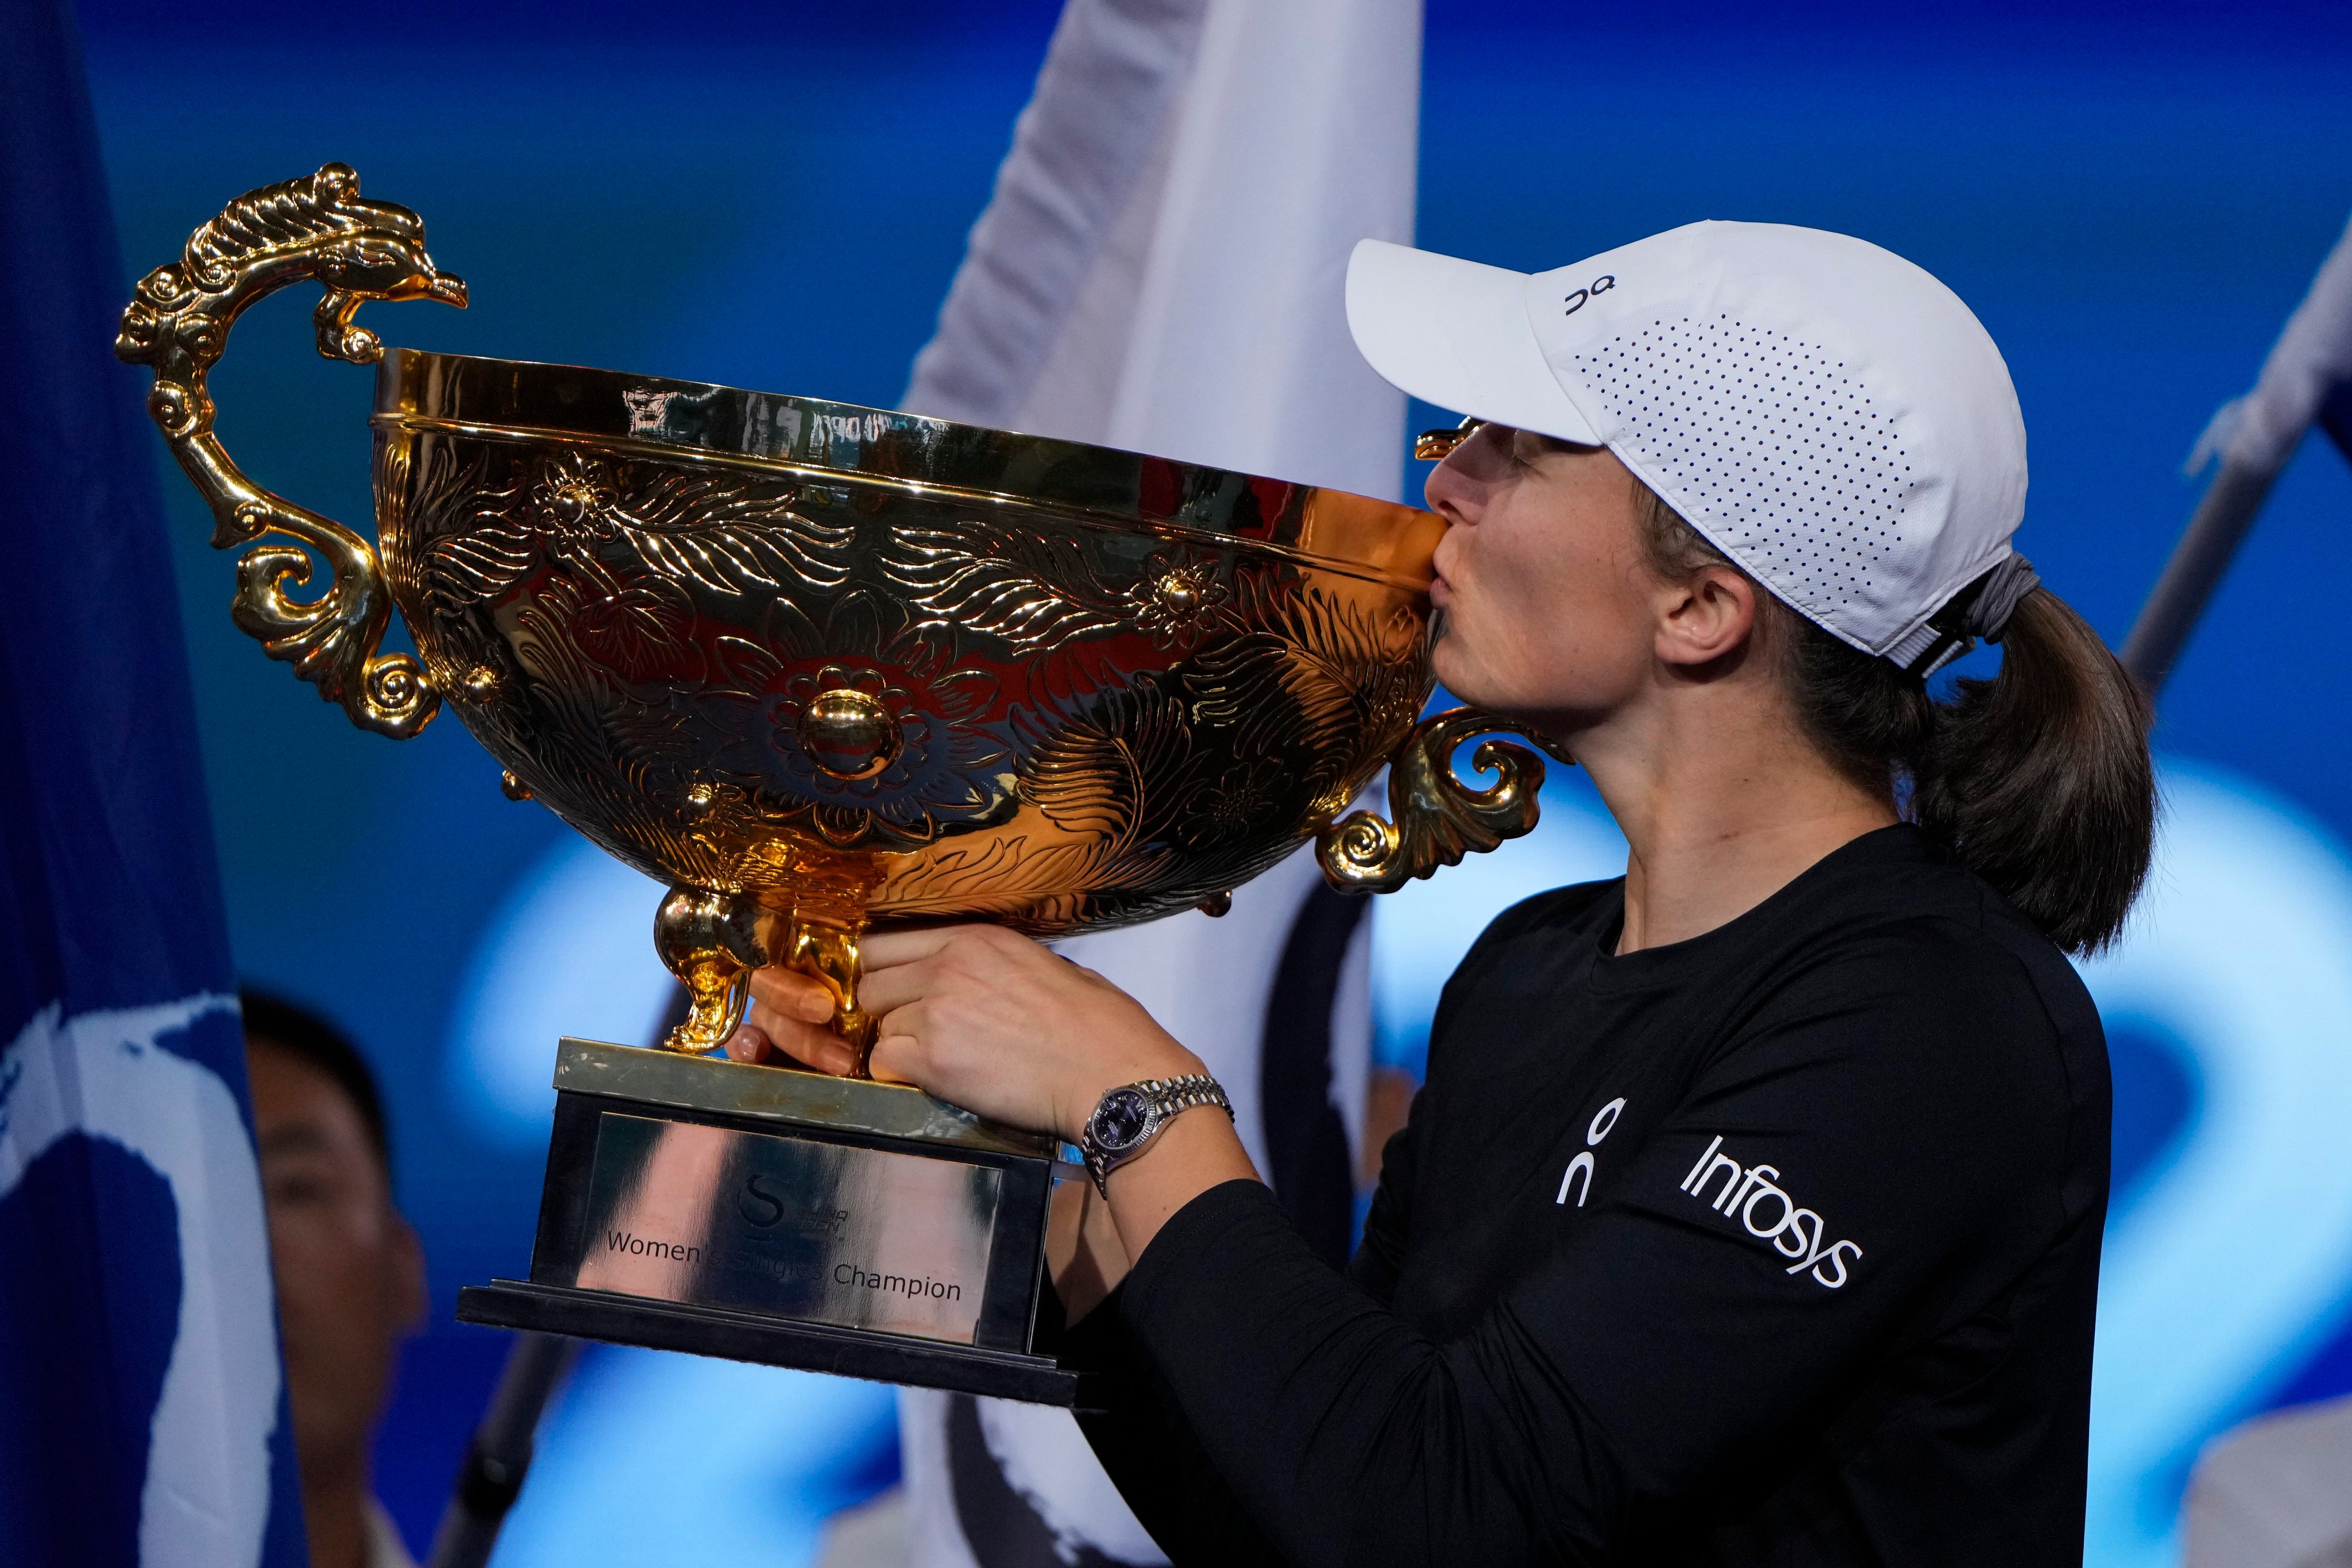 Iga Swiatek shows off her trophy after winning in Beijing. Photo: AP